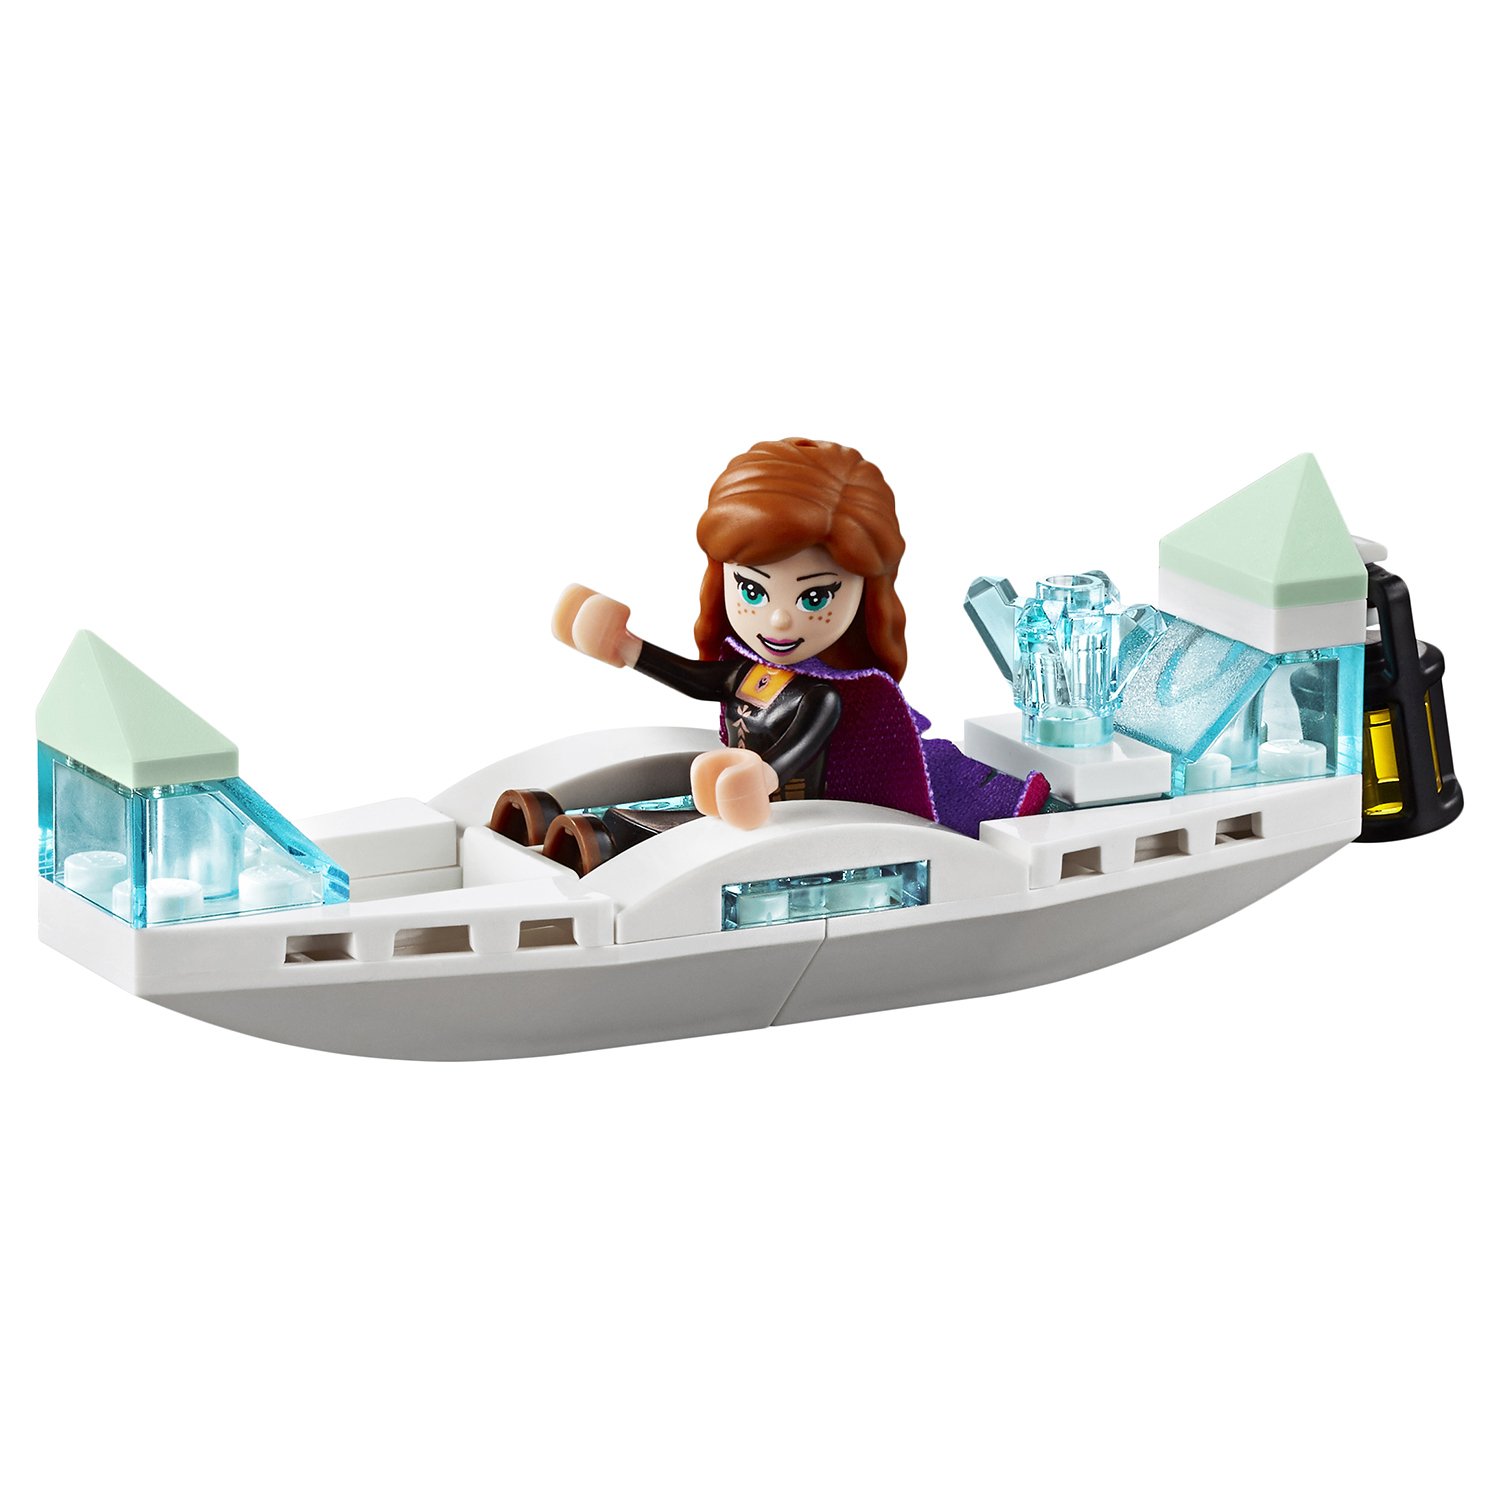 Lego Disney Princess 41165 Экспедиция Анны на каноэ